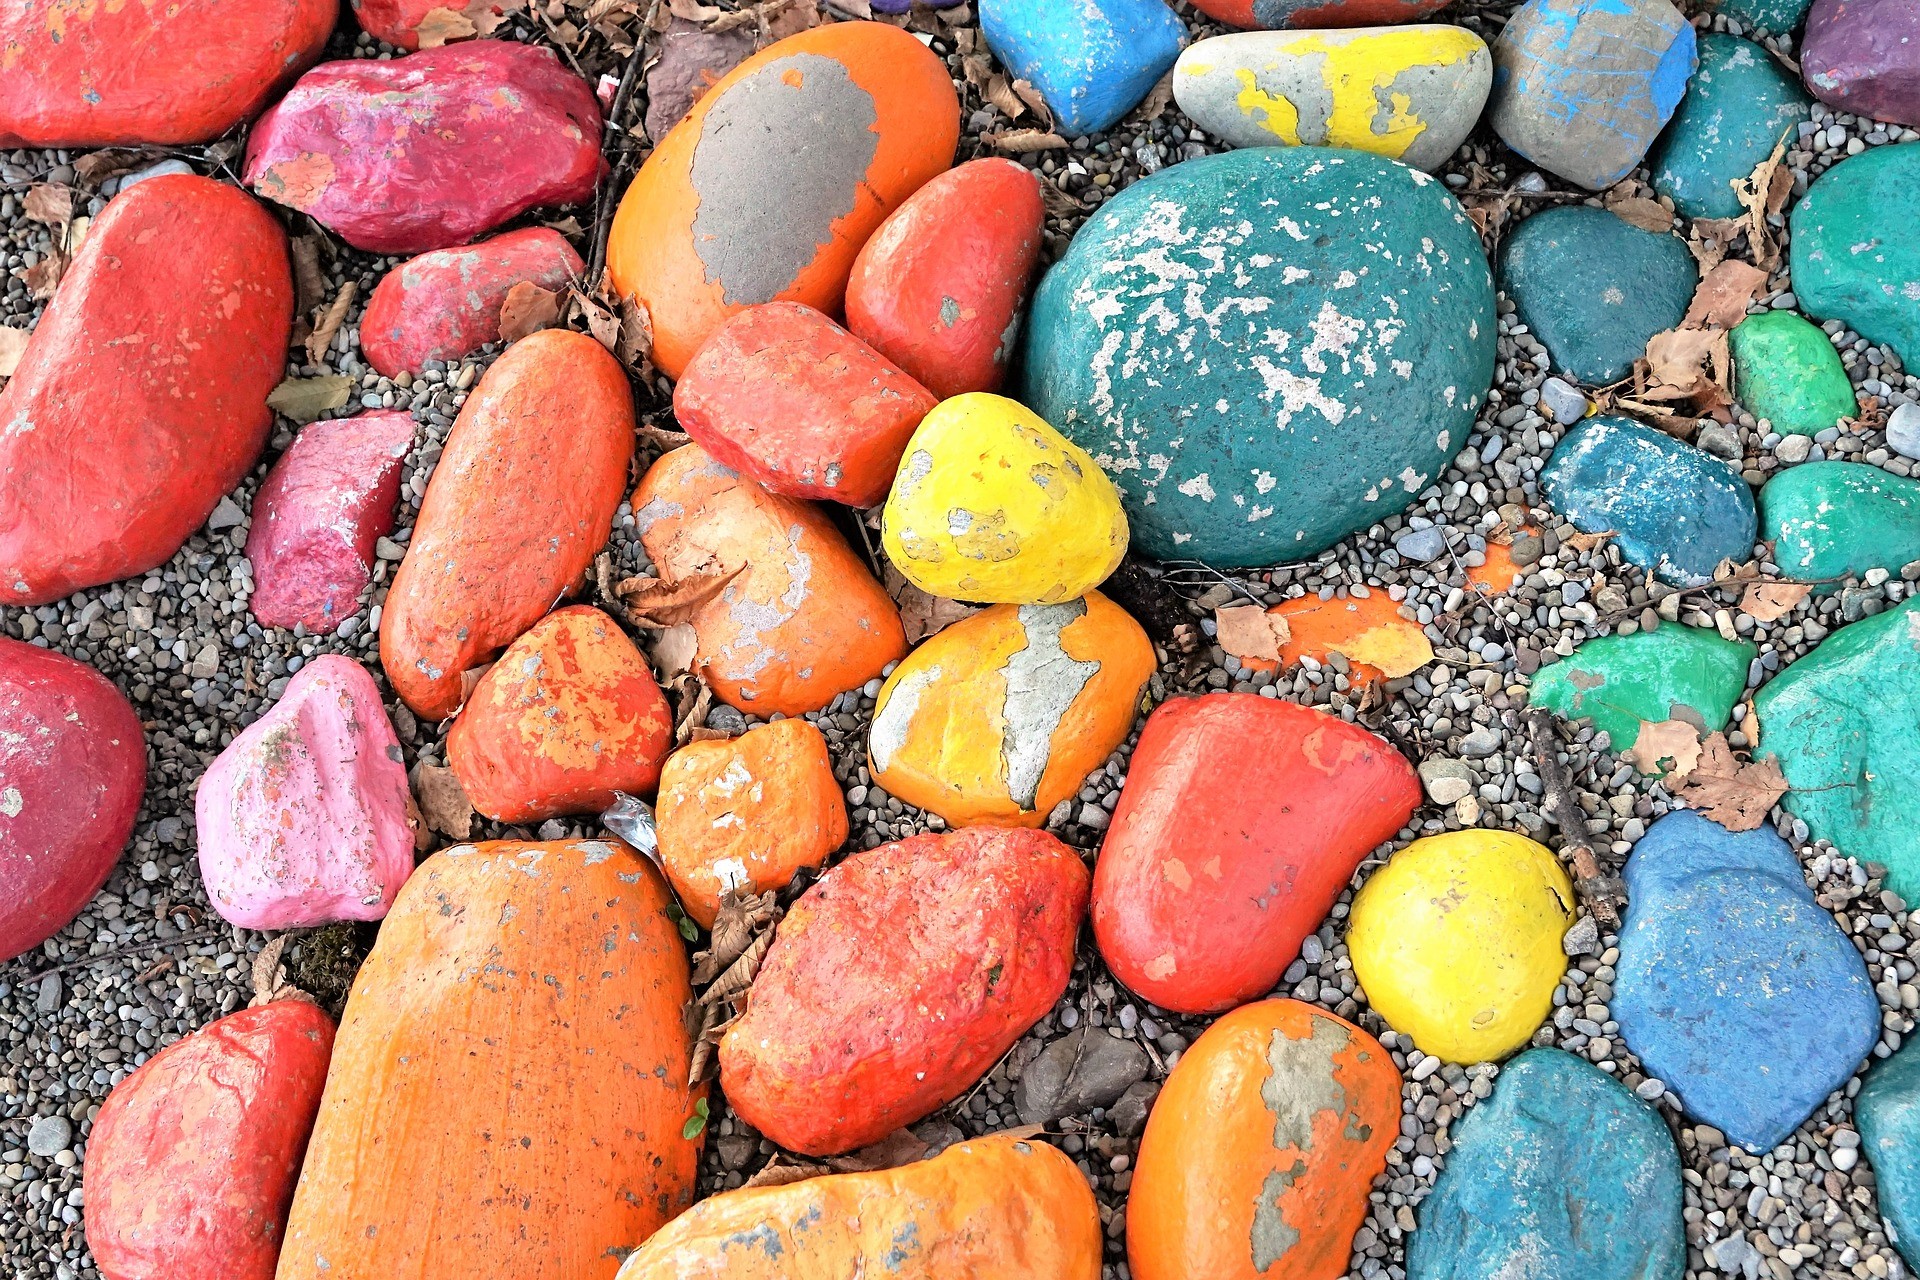 Du hast überall Steine deiner Kinder und weißt nicht wohin? Ich zeige dir 5 einfache Ideen, was du mit Steinen basteln kannst.